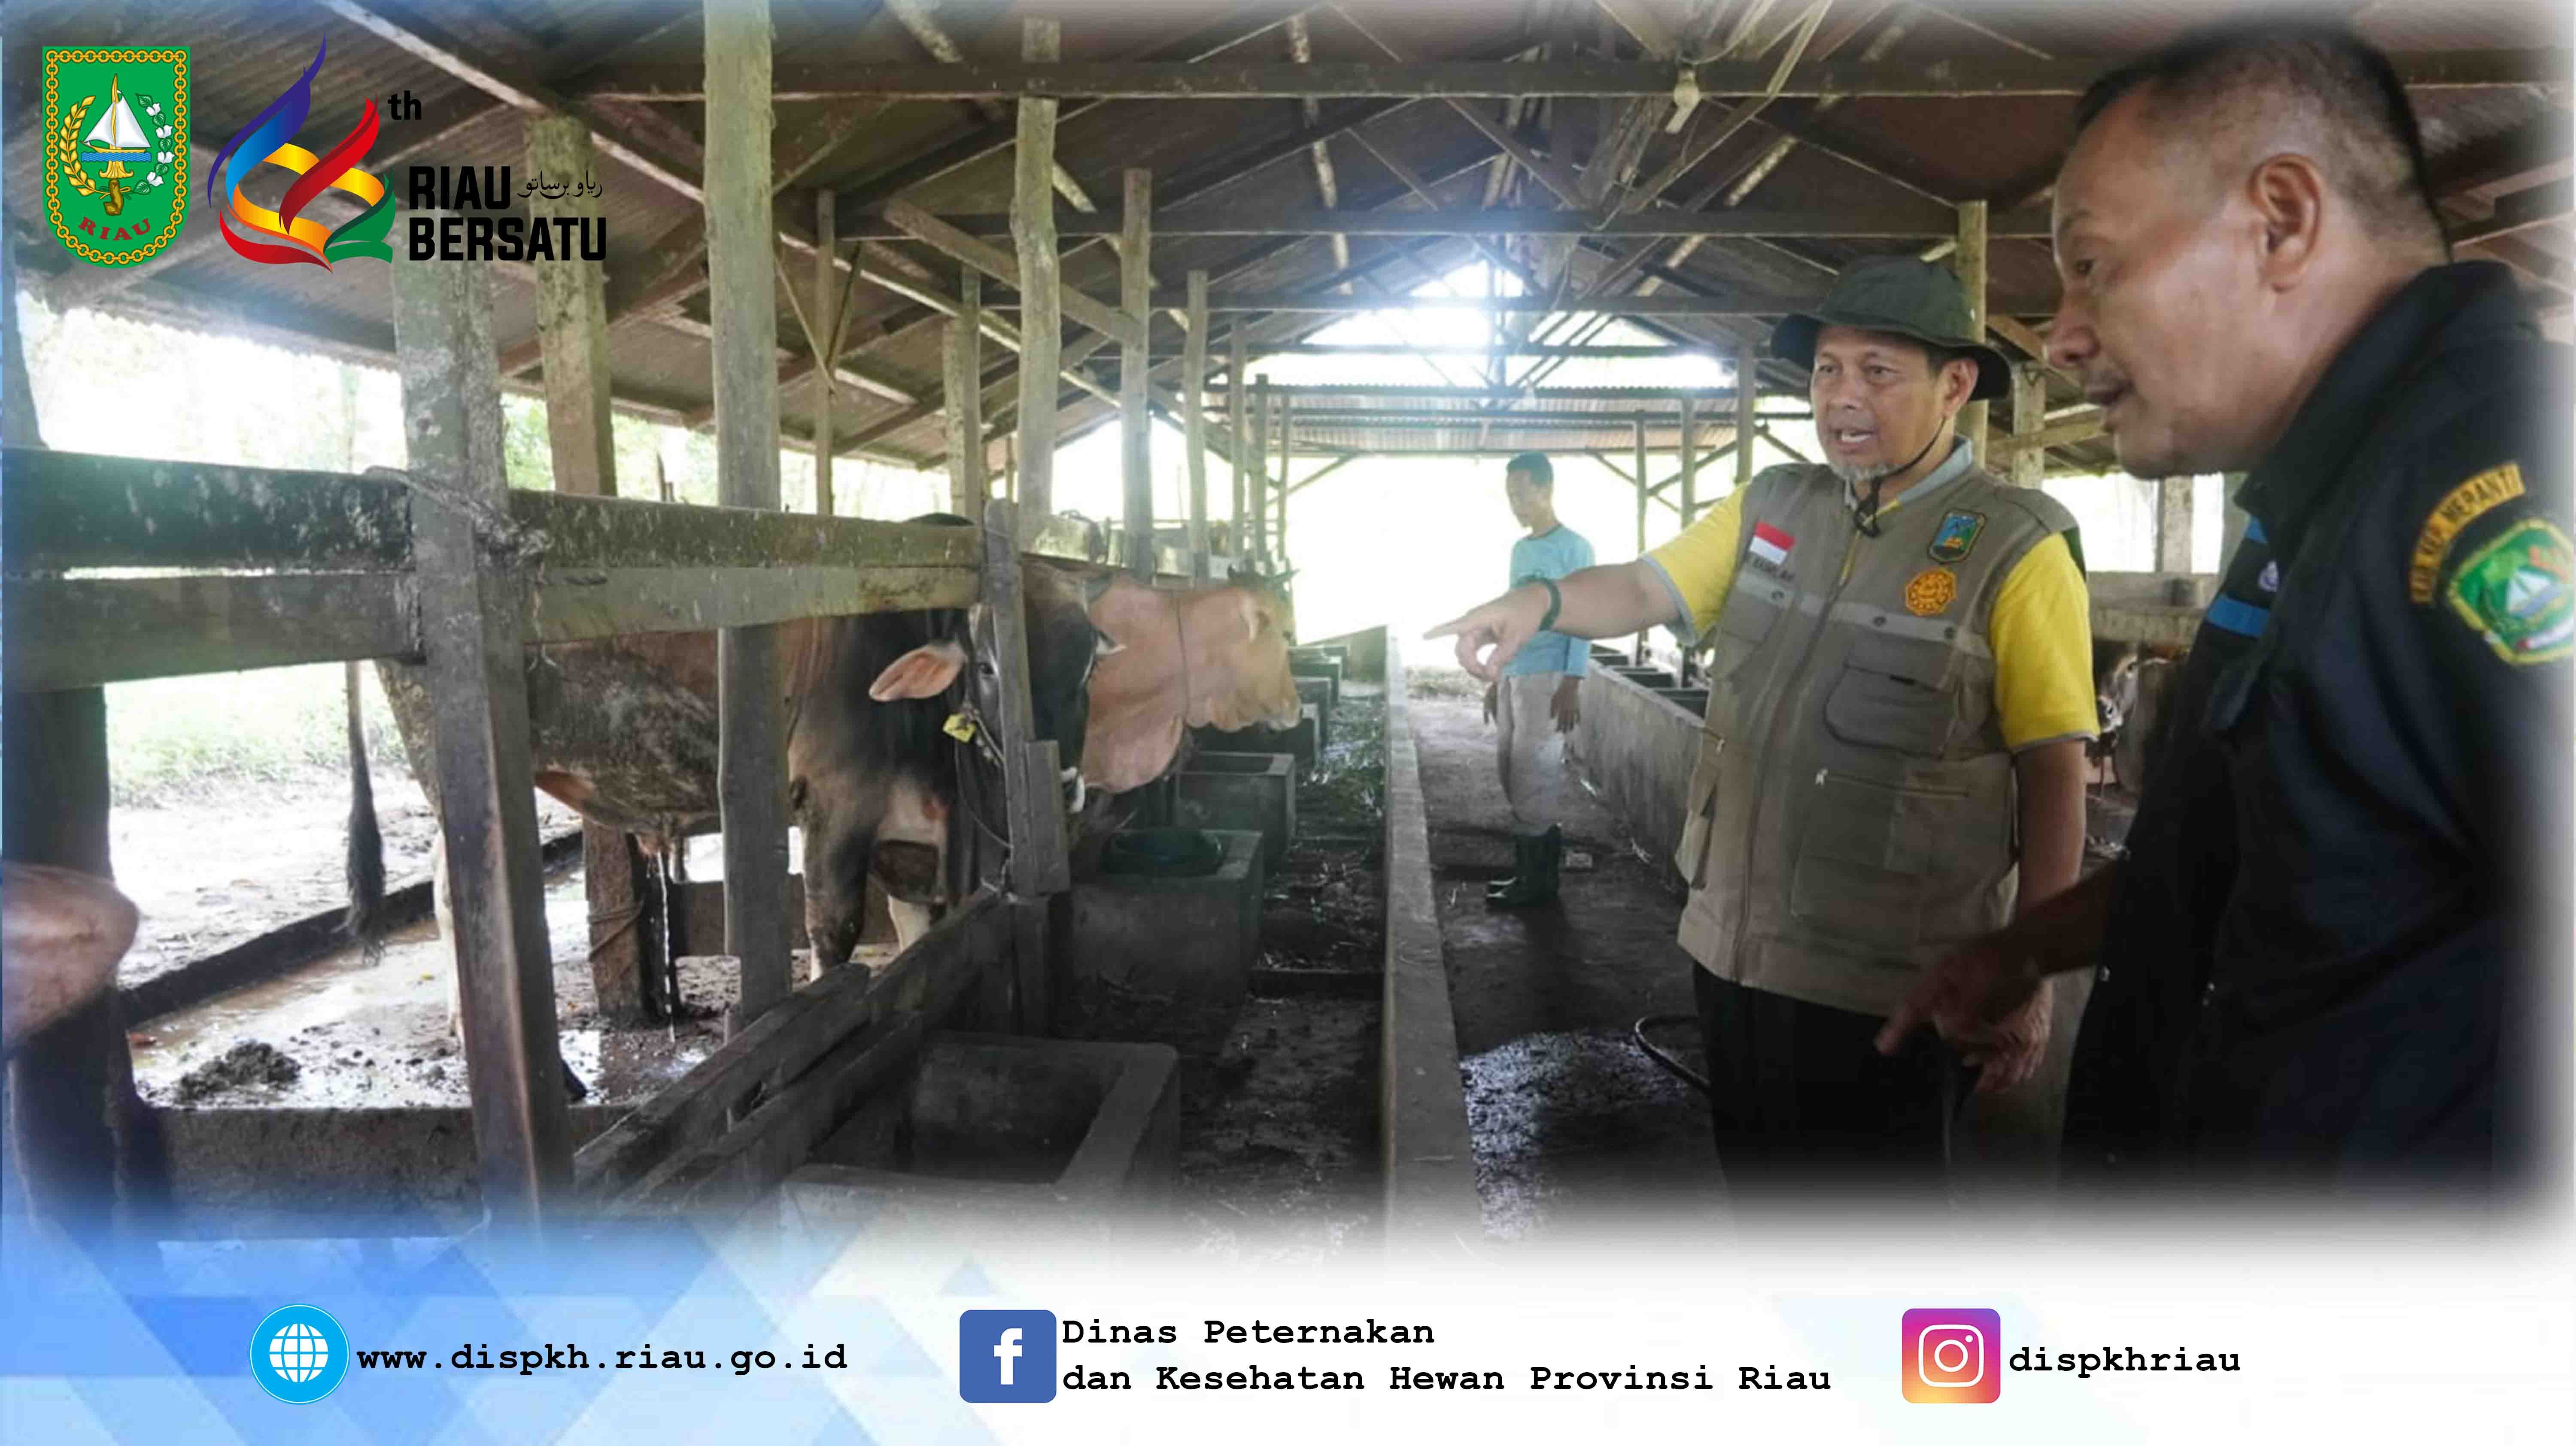 Peninjauan Kepala Dinas Peternakan dan Kesehatan Hewan Provinsi Riau ke kandang Sapi Inseminasi Buatan (IB)